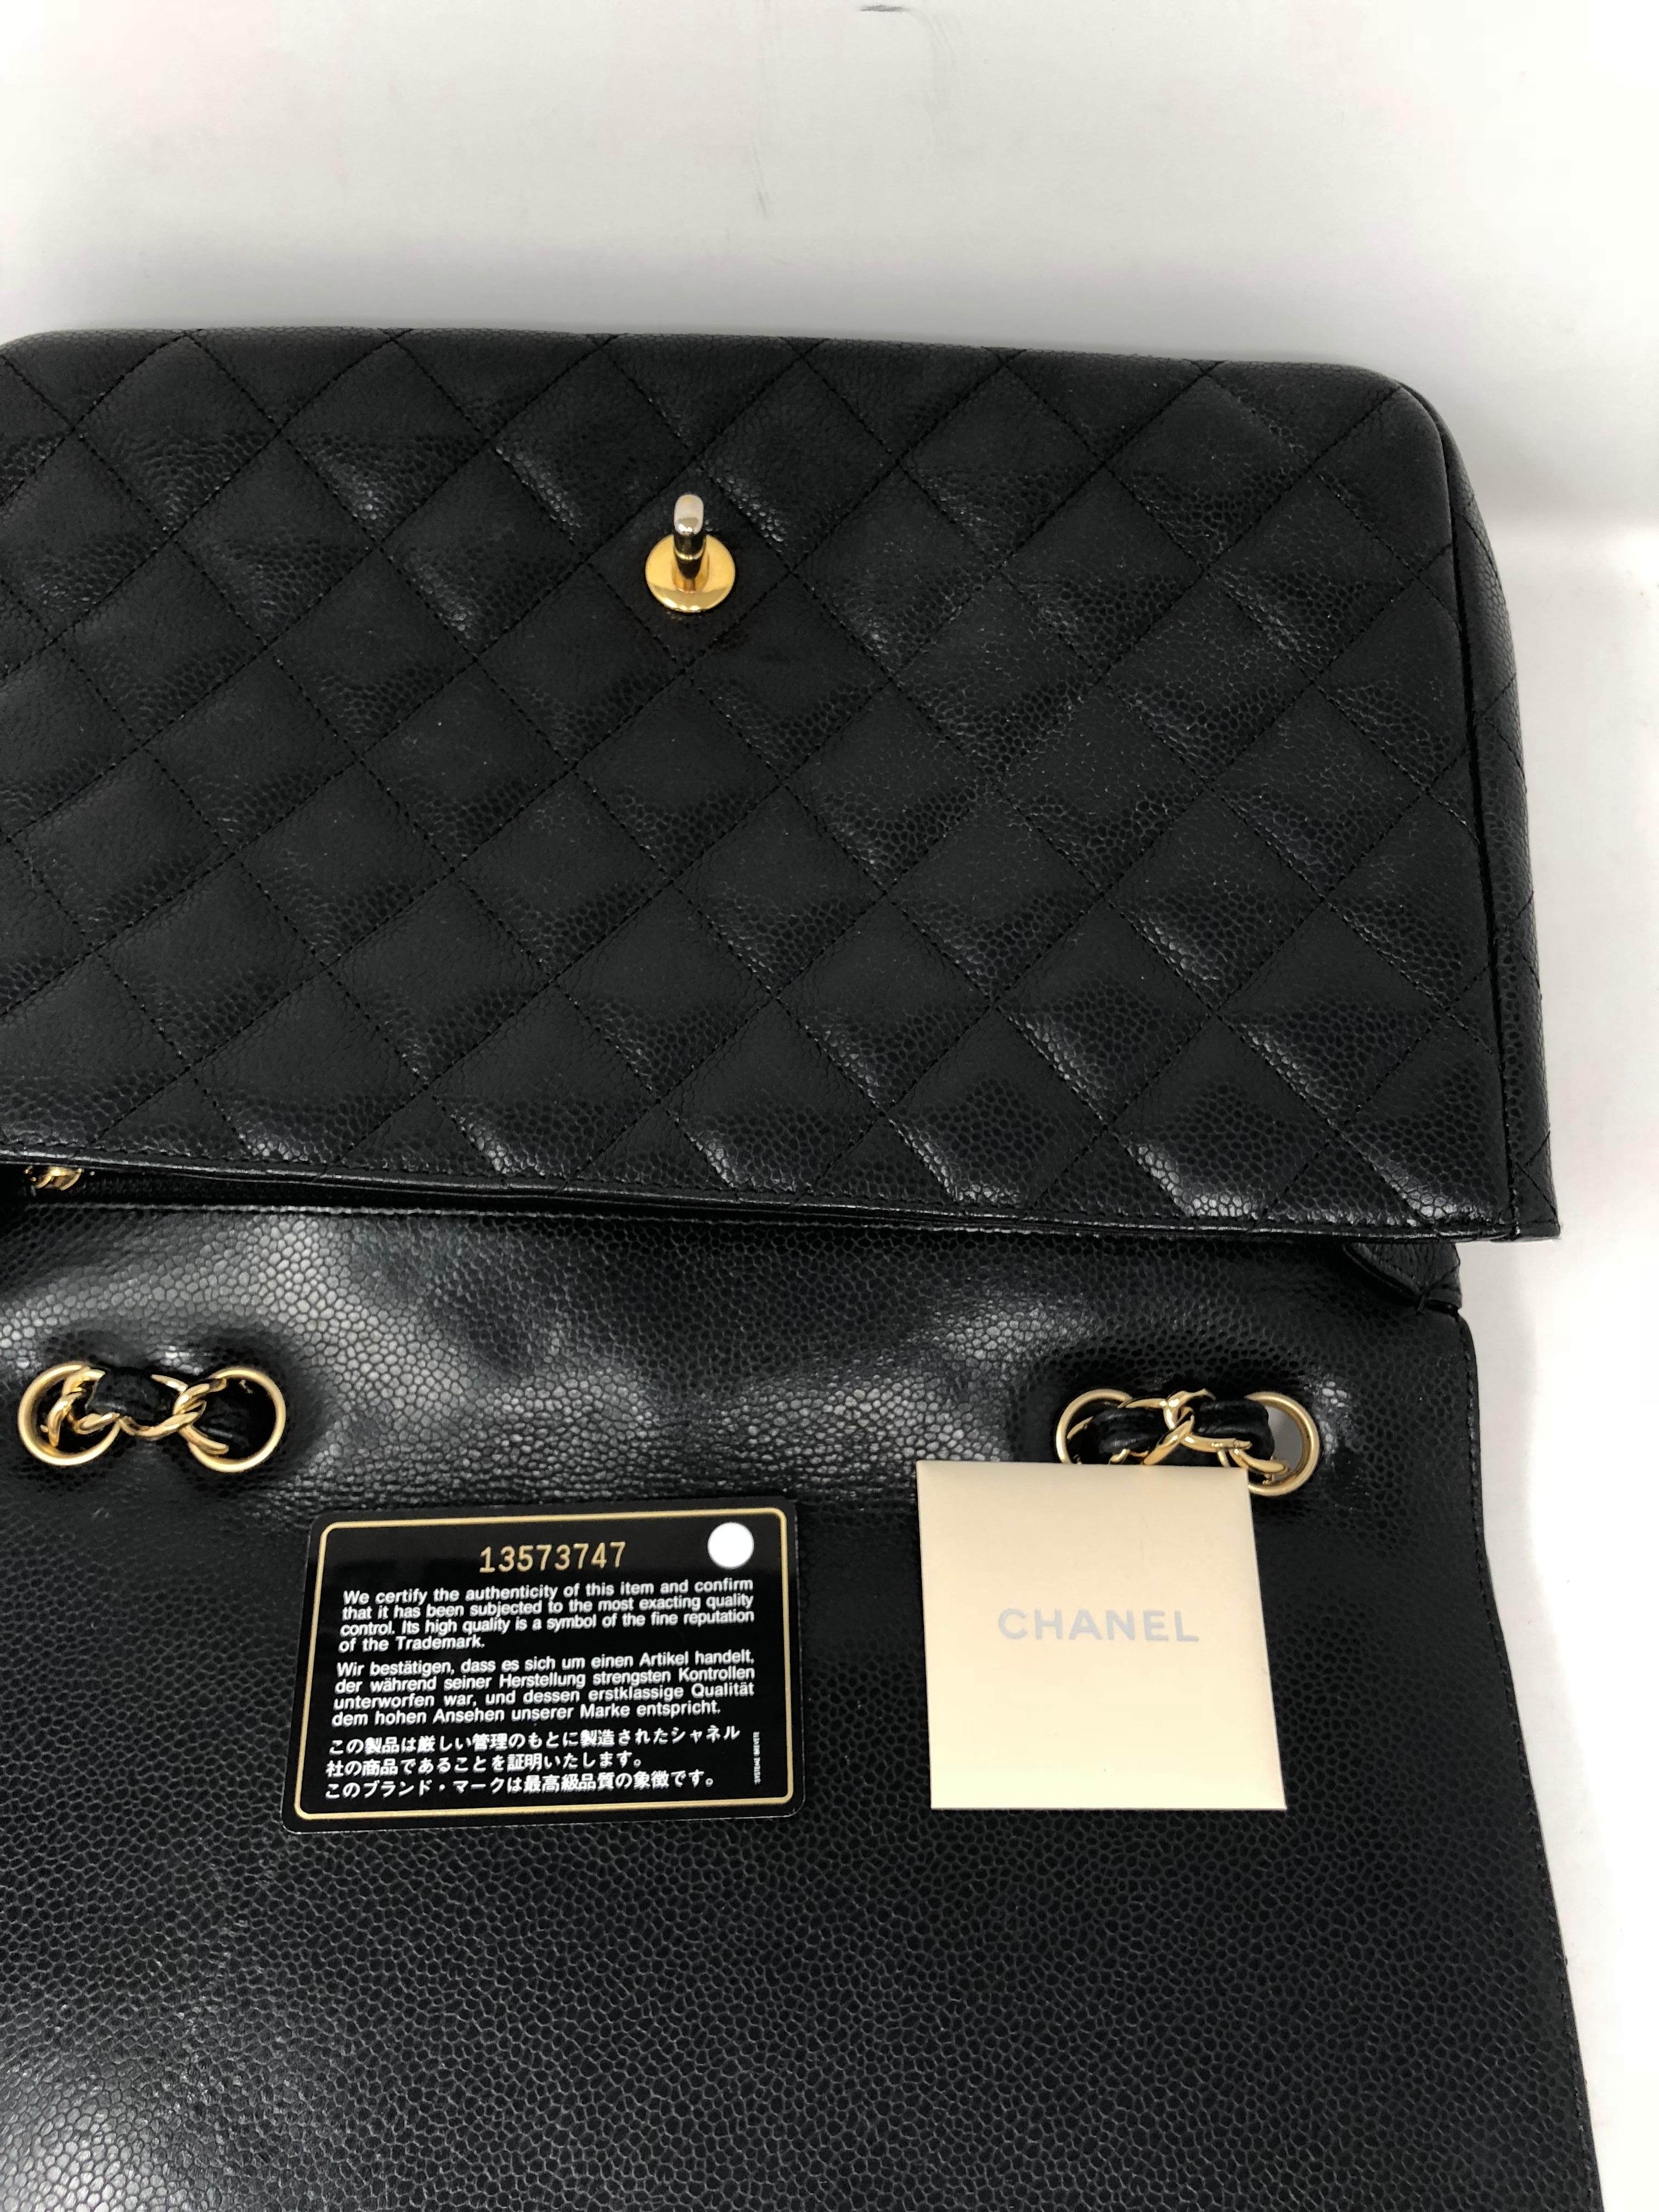 Chanel Black Caviar Jumbo Bag 6